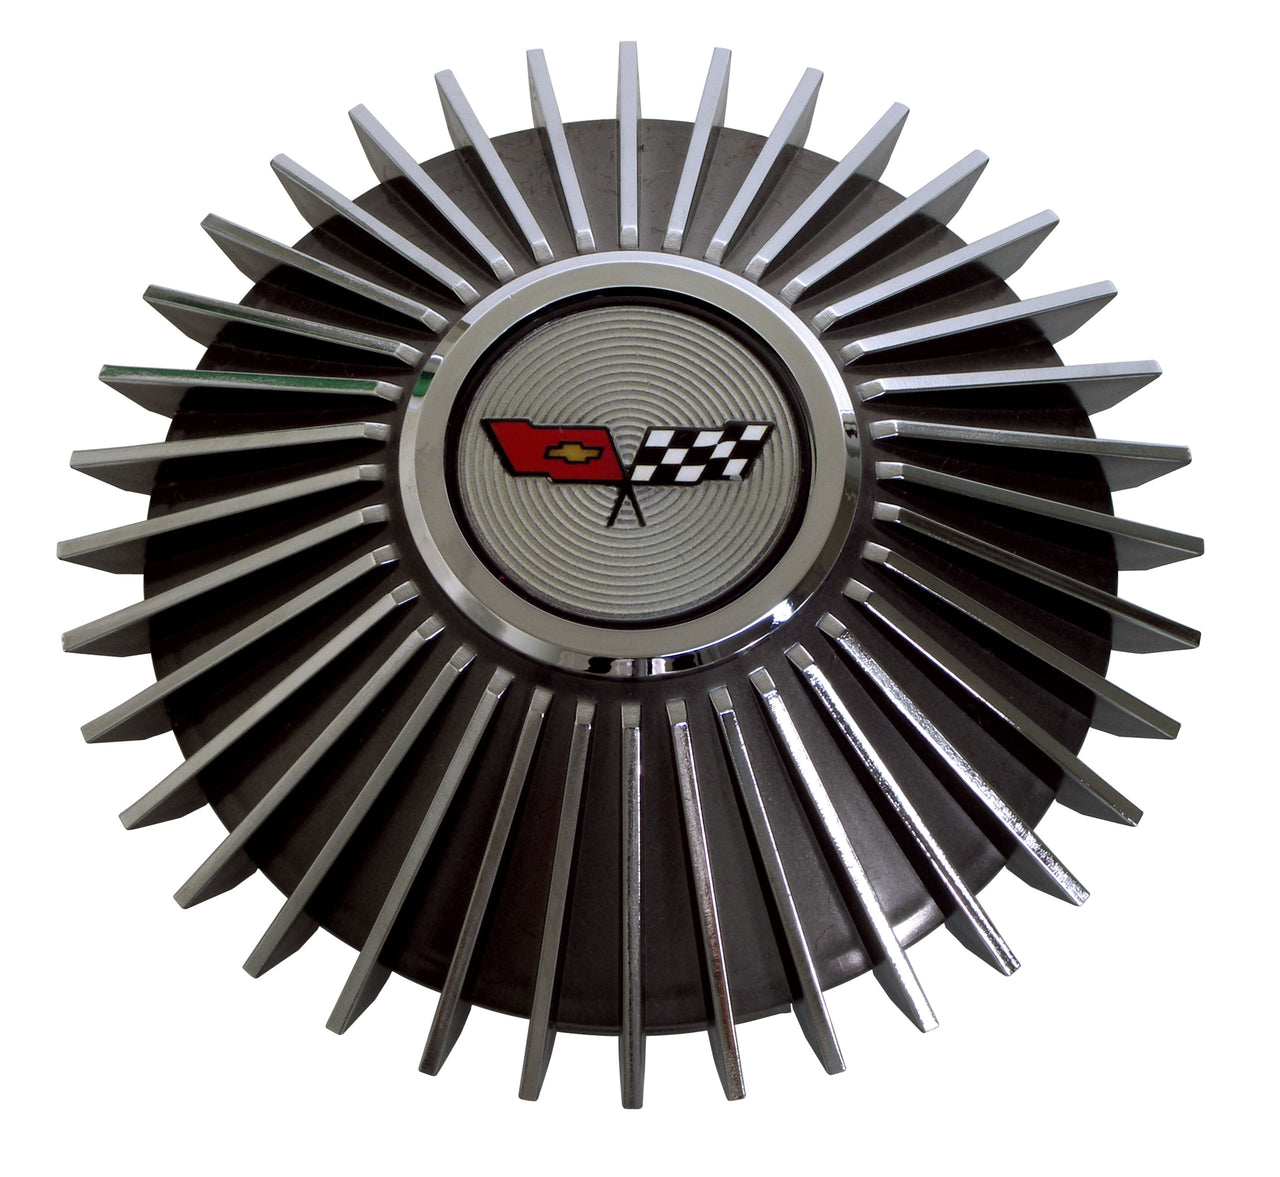 Collector-Edition-Center-Wheel-Cap-W/Emblem-2379-Corvette-Store-Online